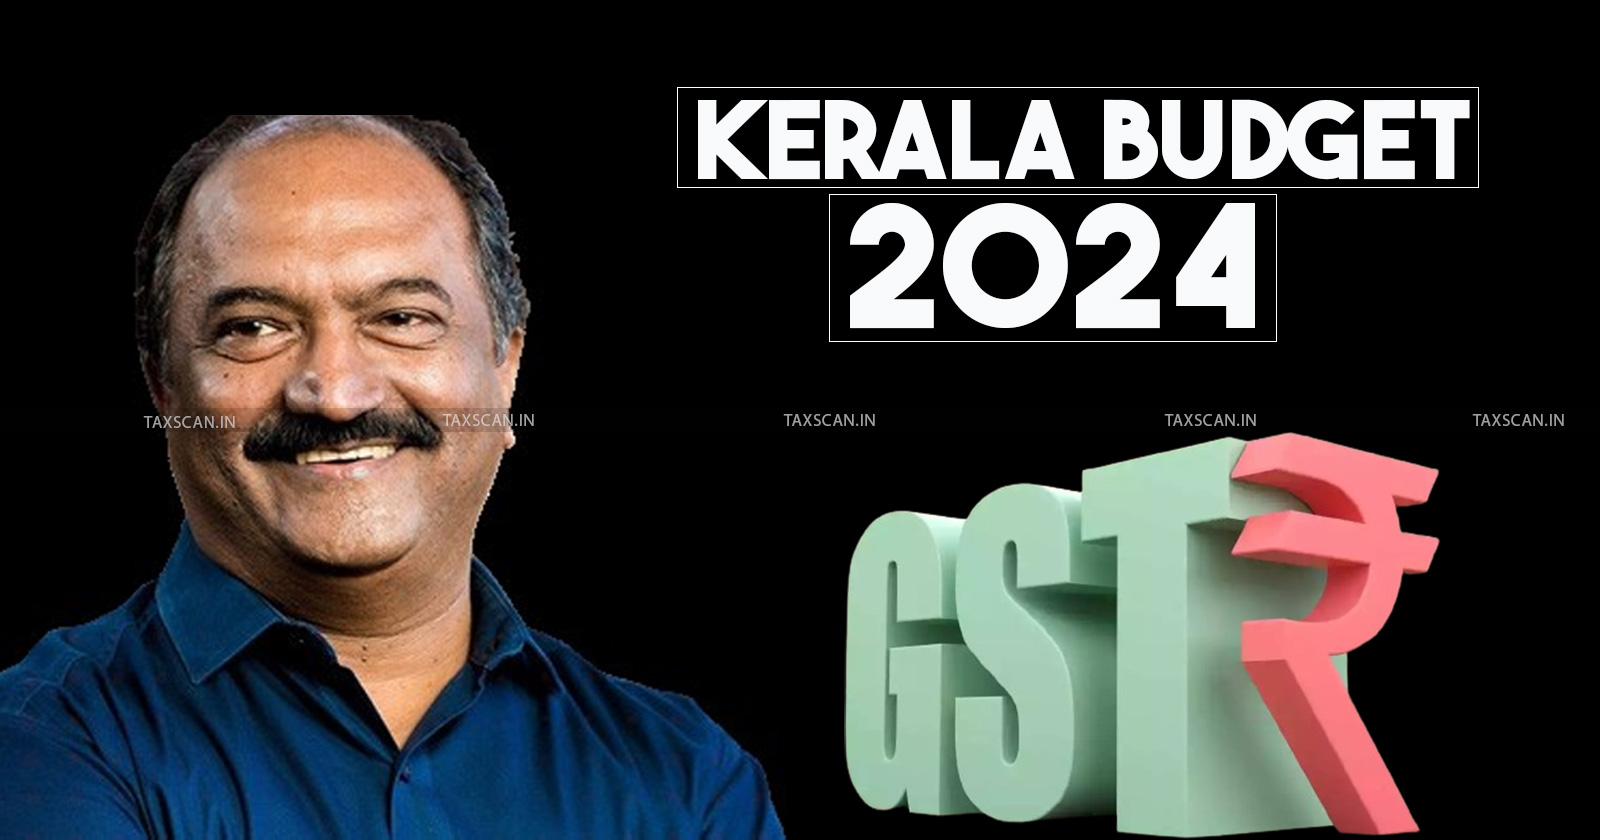 Kerala budget 2024 - GST share allocation - Kerala Finance Minister - Central Government allocation - GST revenue Kerala - taxscan